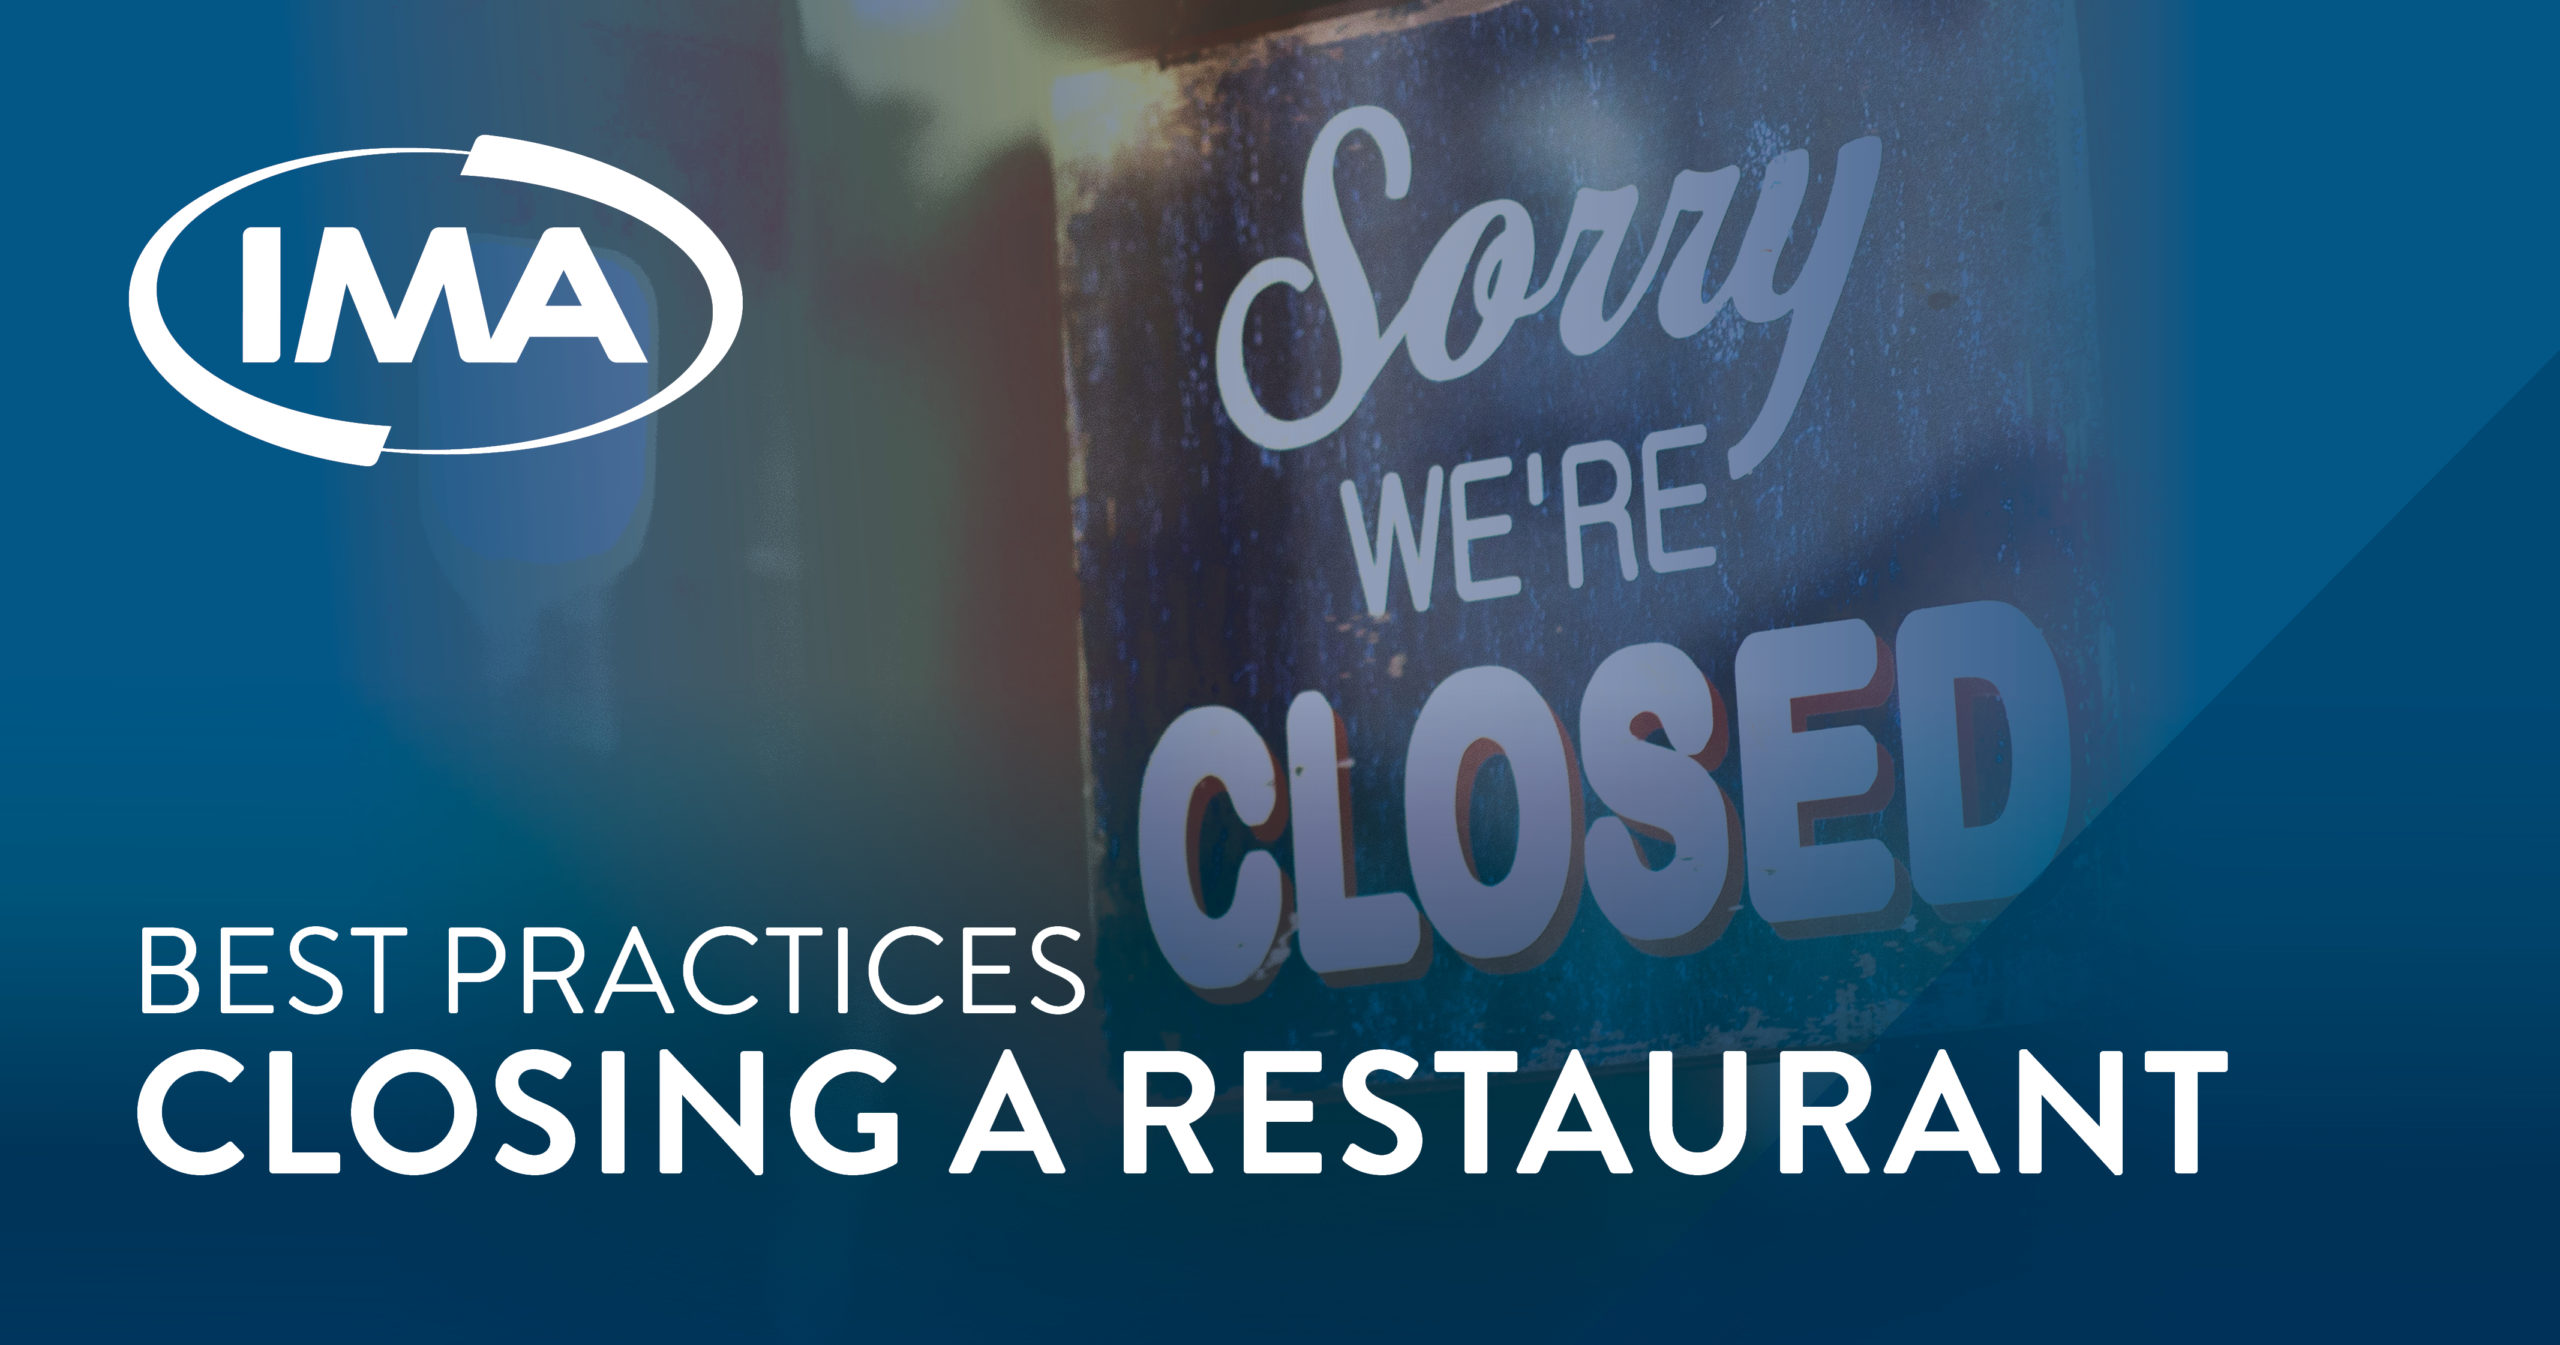 Closing a Restaurant IMA Business